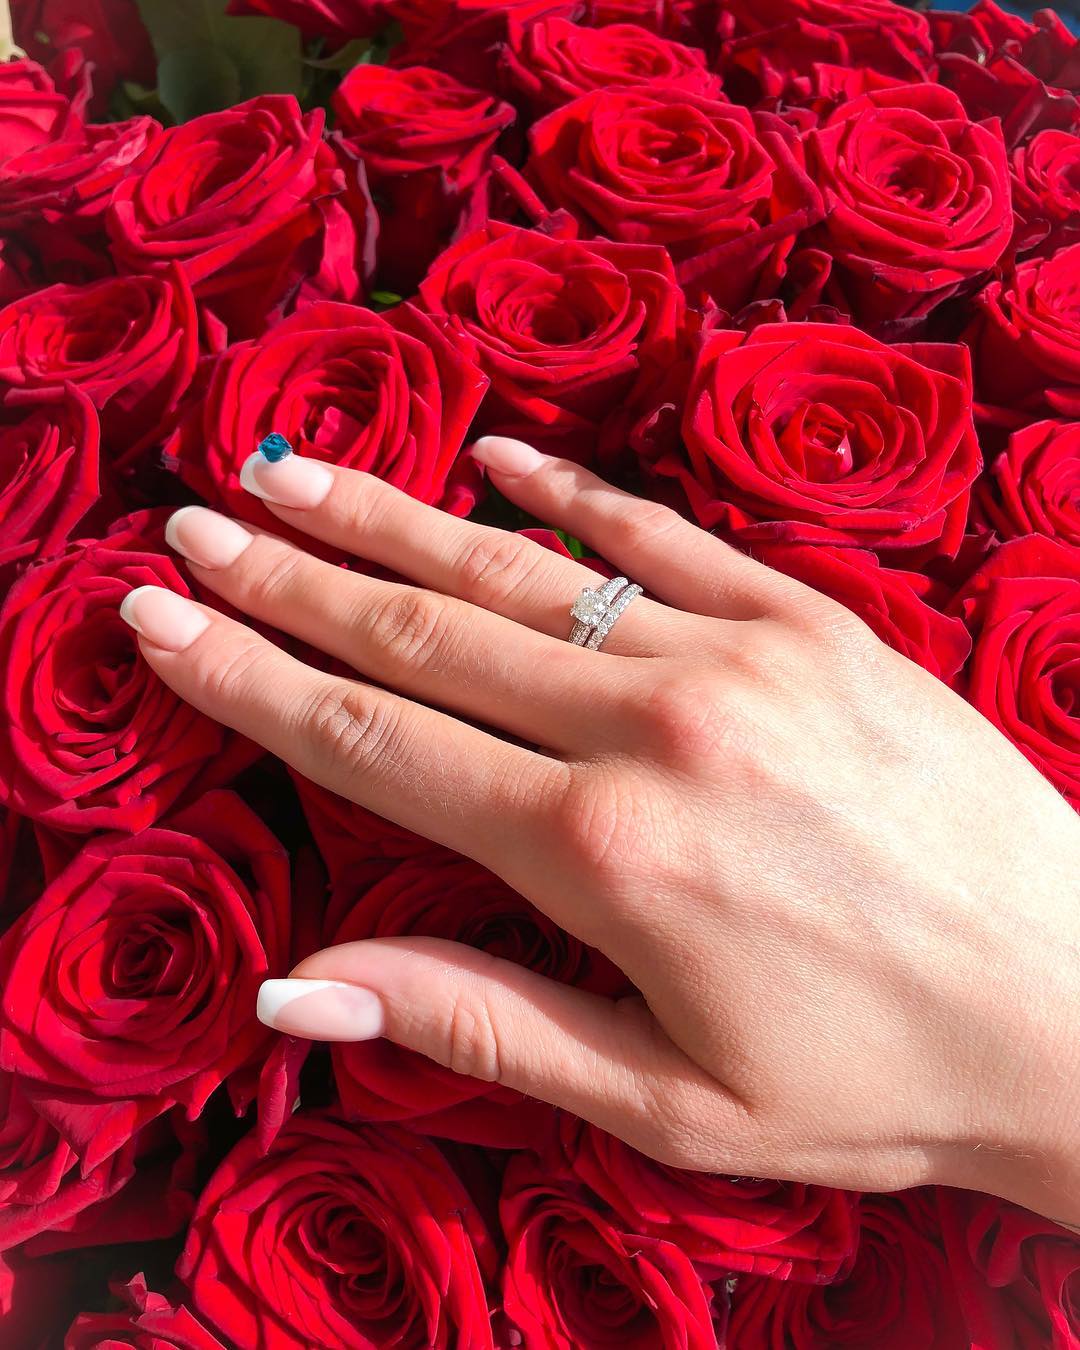 Фото кольца и цветов. Букет с кольцом. Цветы и рука с кольцом. Предложение руки и сердца цветы с кольцом. Шикарный букет с кольцом.